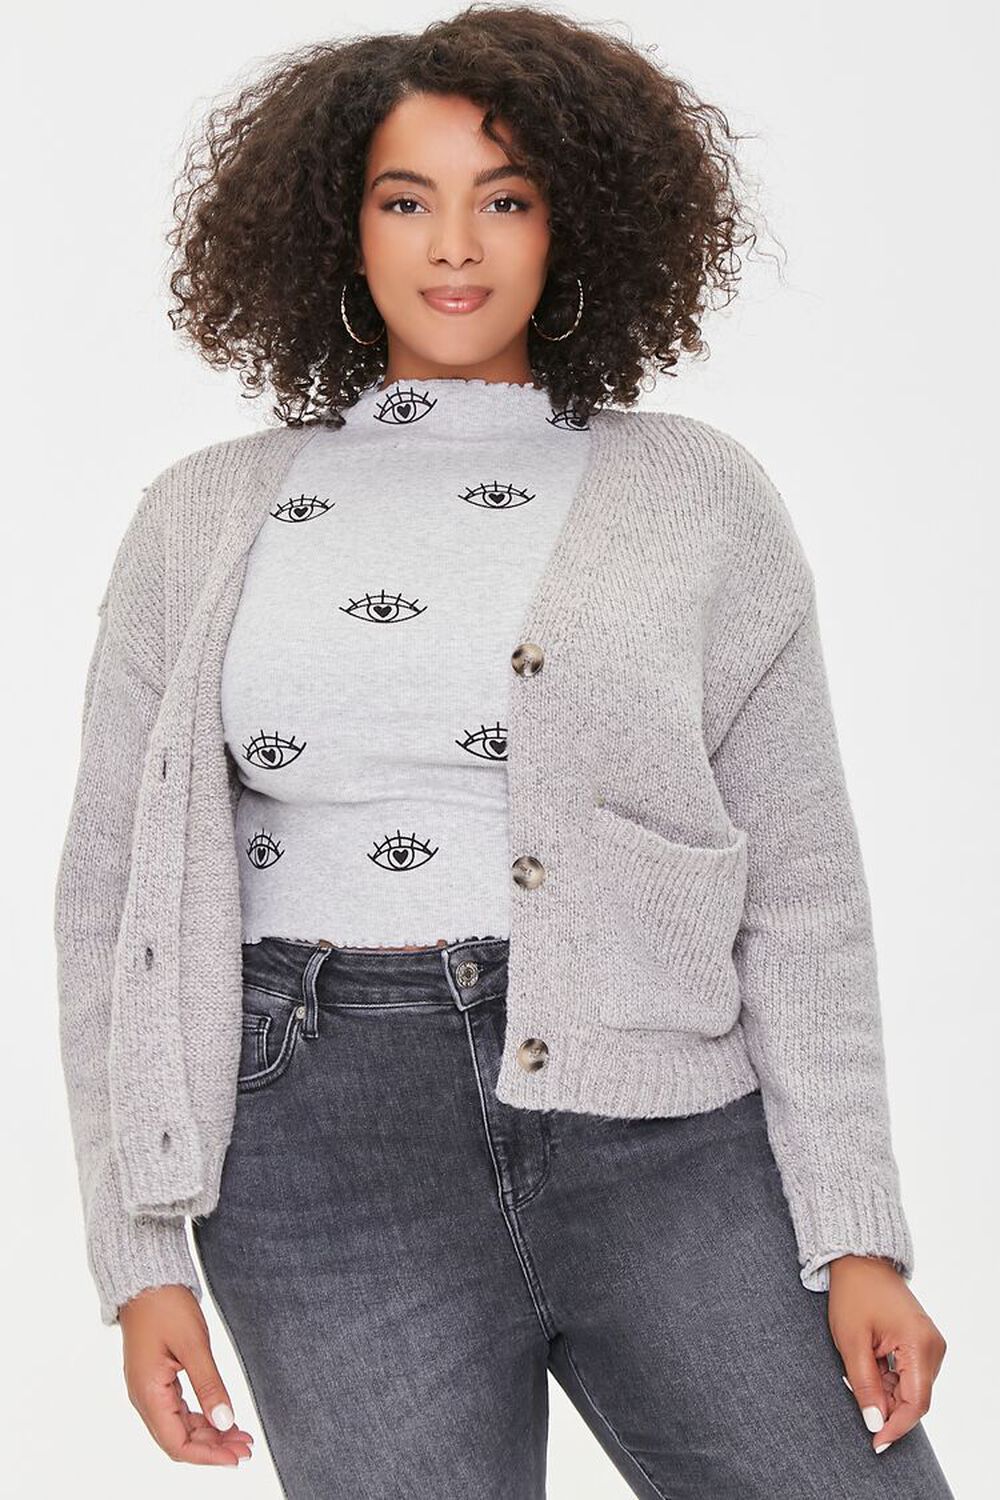 HEATHER GREY Plus Size Marled Cardigan Sweater, image 1